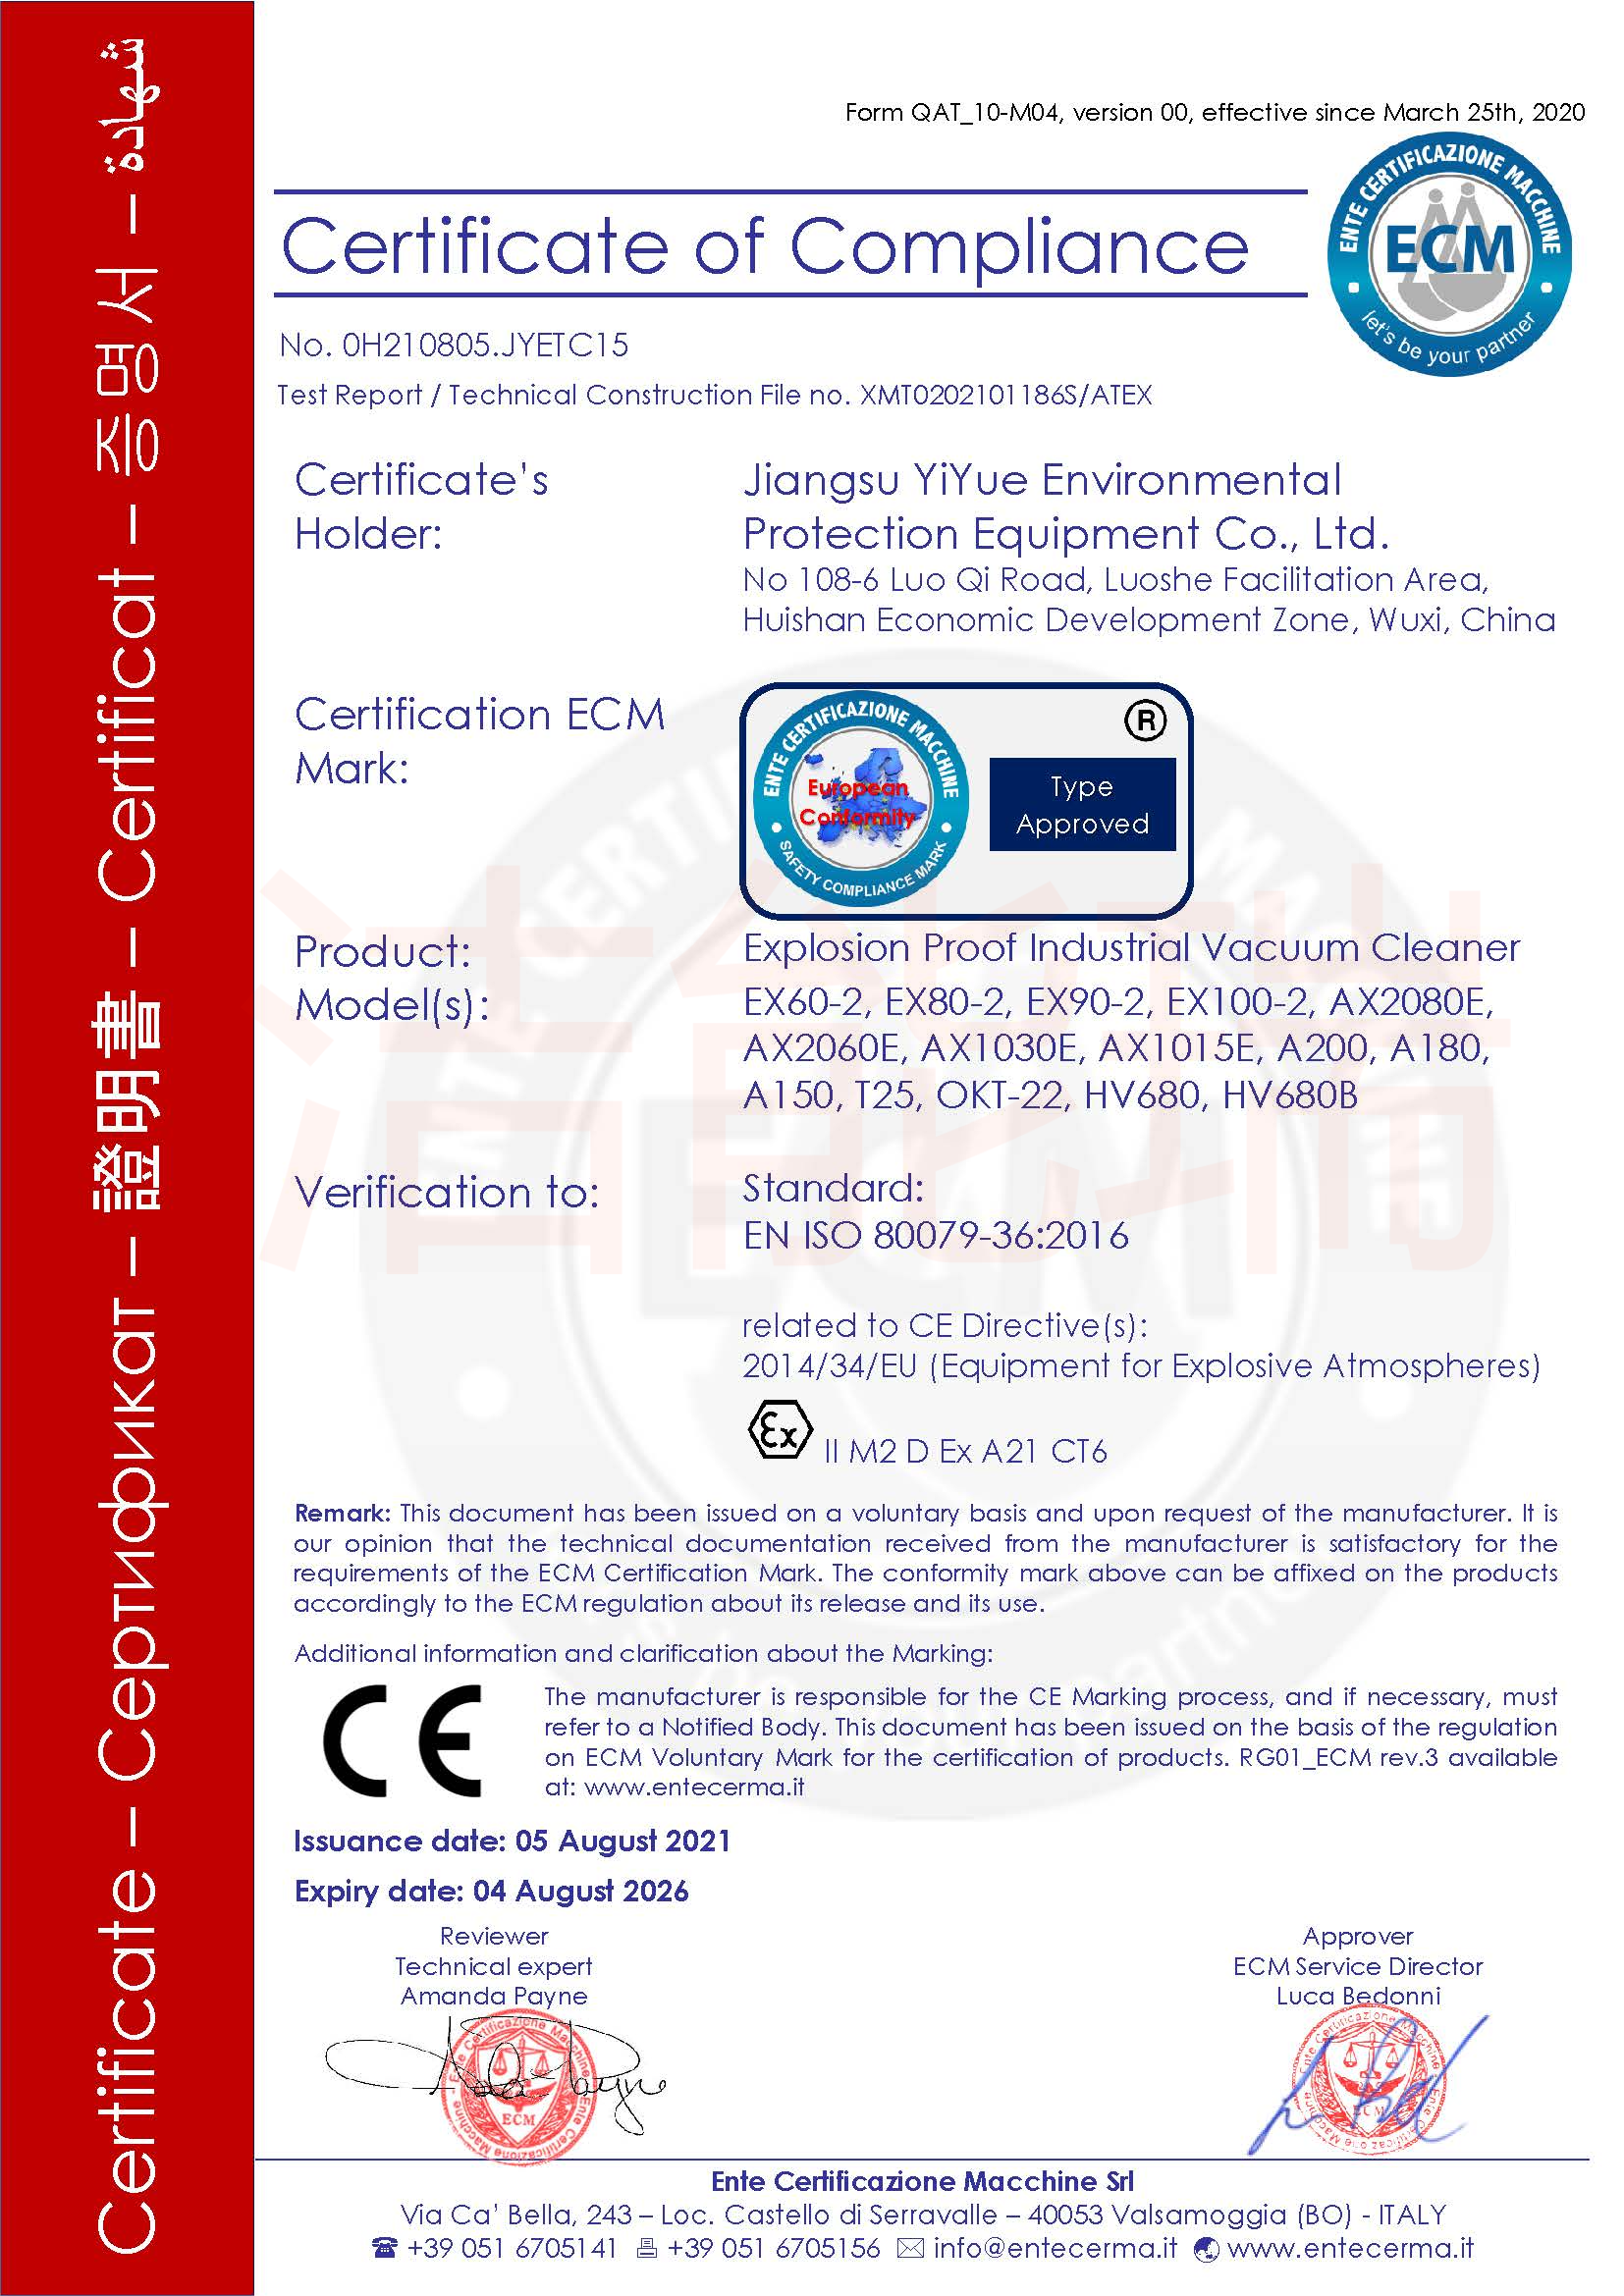 ex60-2防爆认证证书